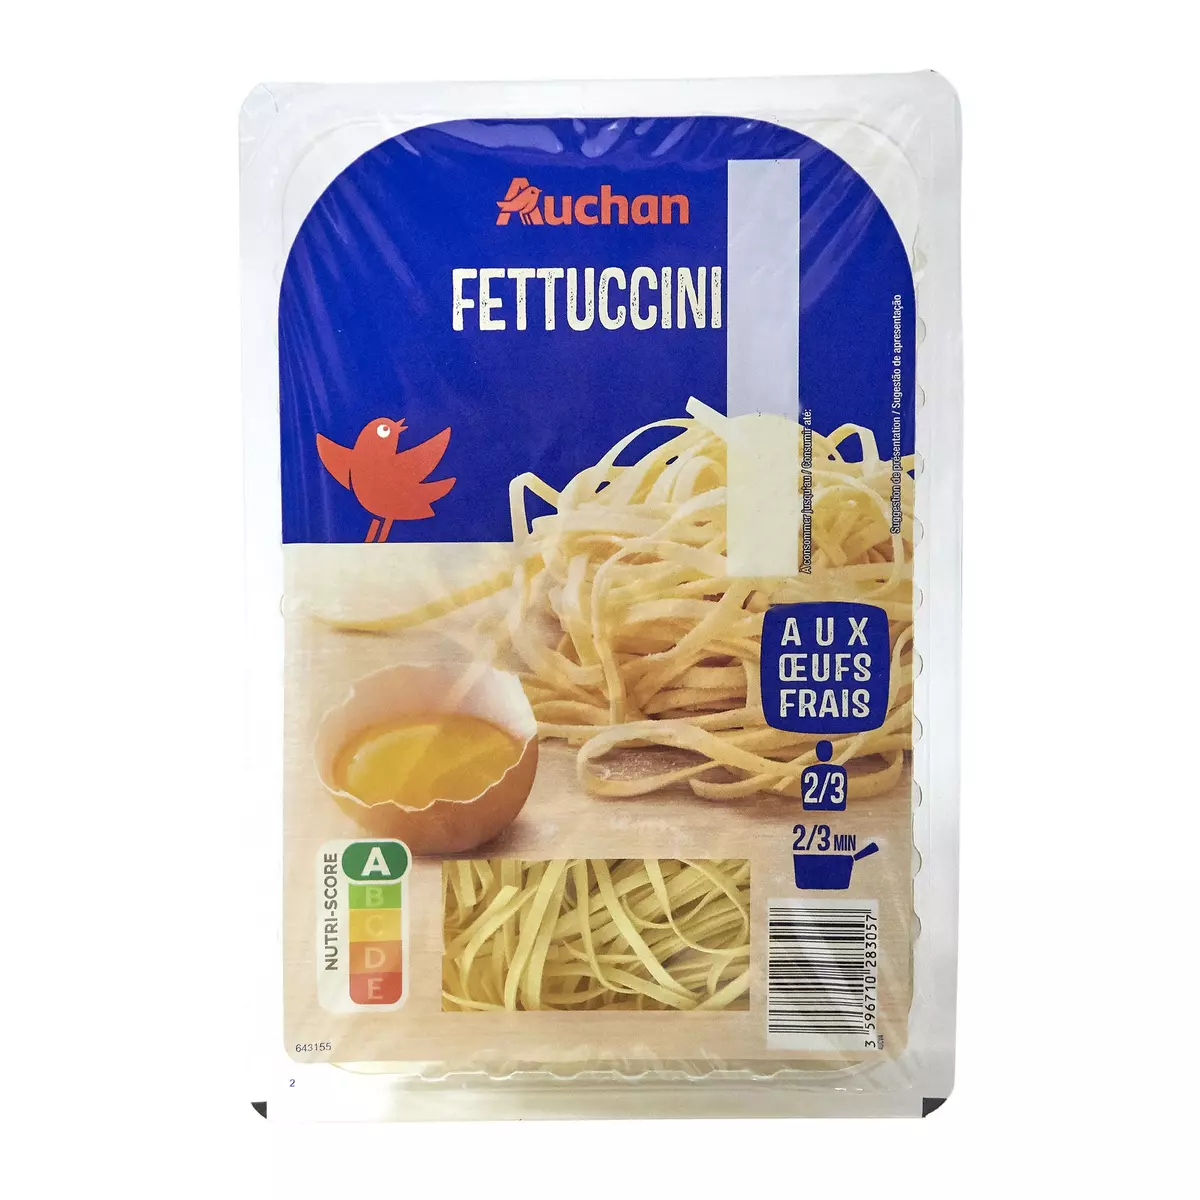 AUCHAN Fettuccini aux oeufs frais 2-3 portions 300g